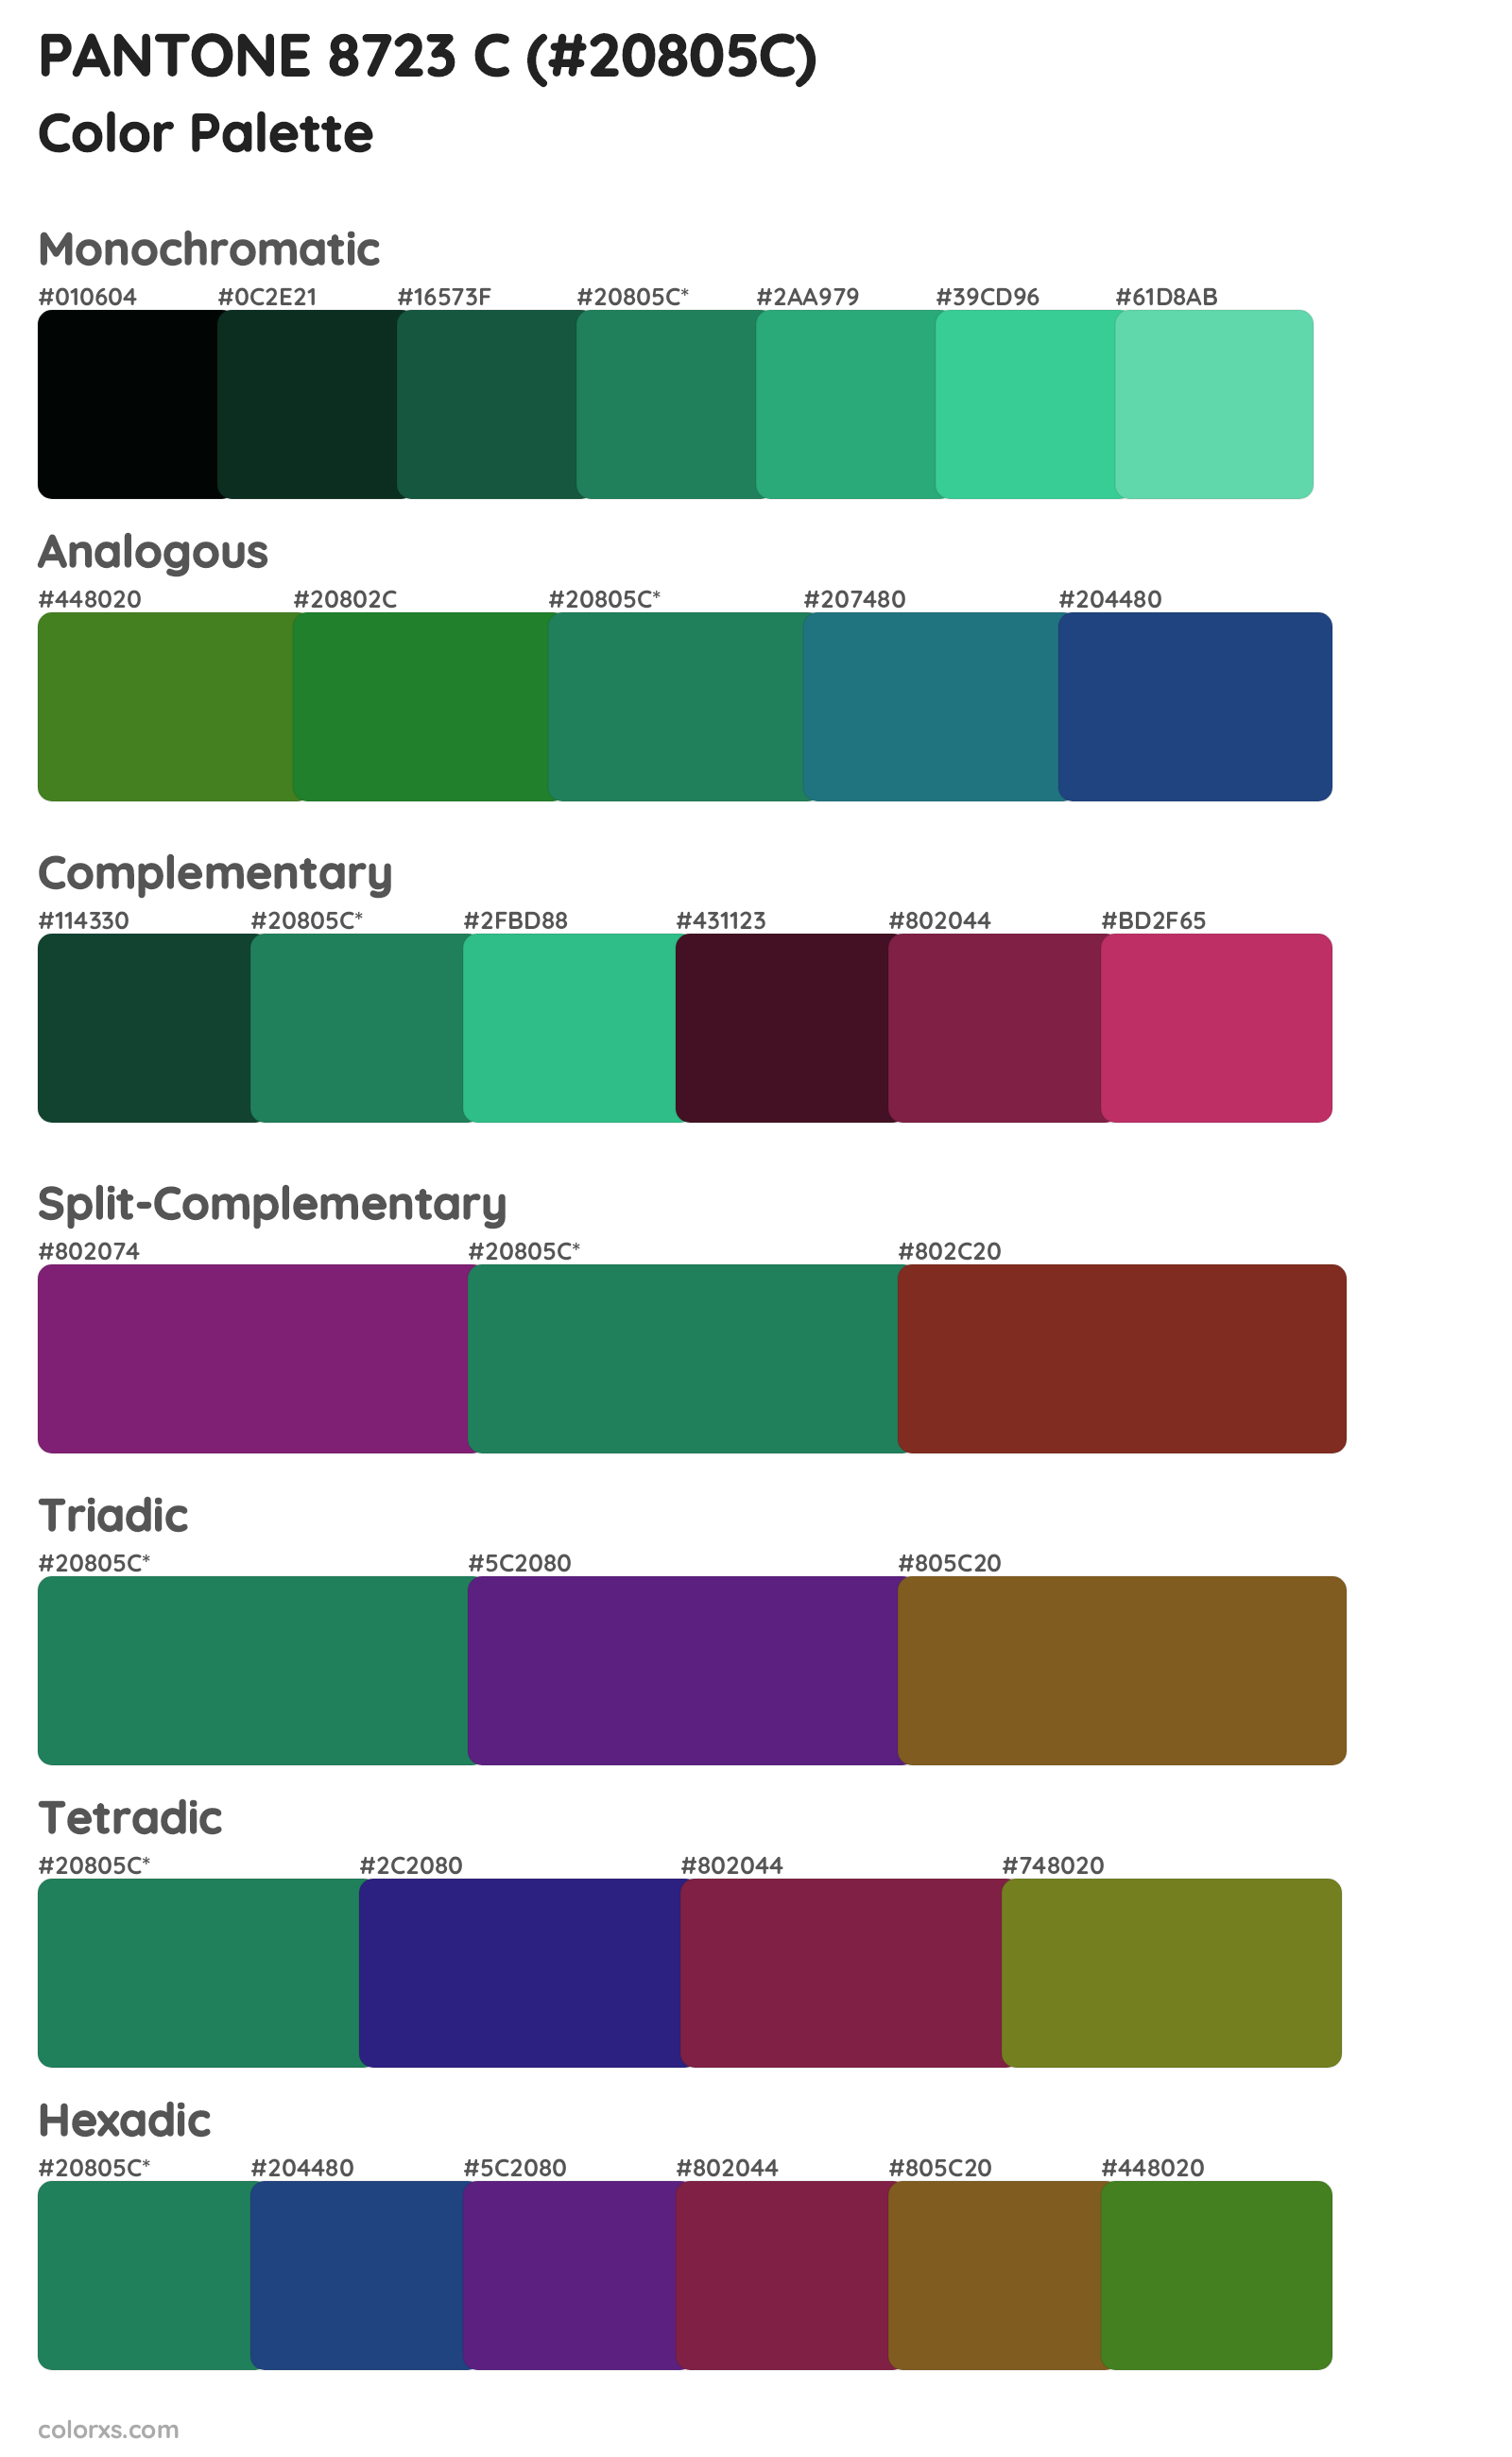 PANTONE 8723 C Color Scheme Palettes